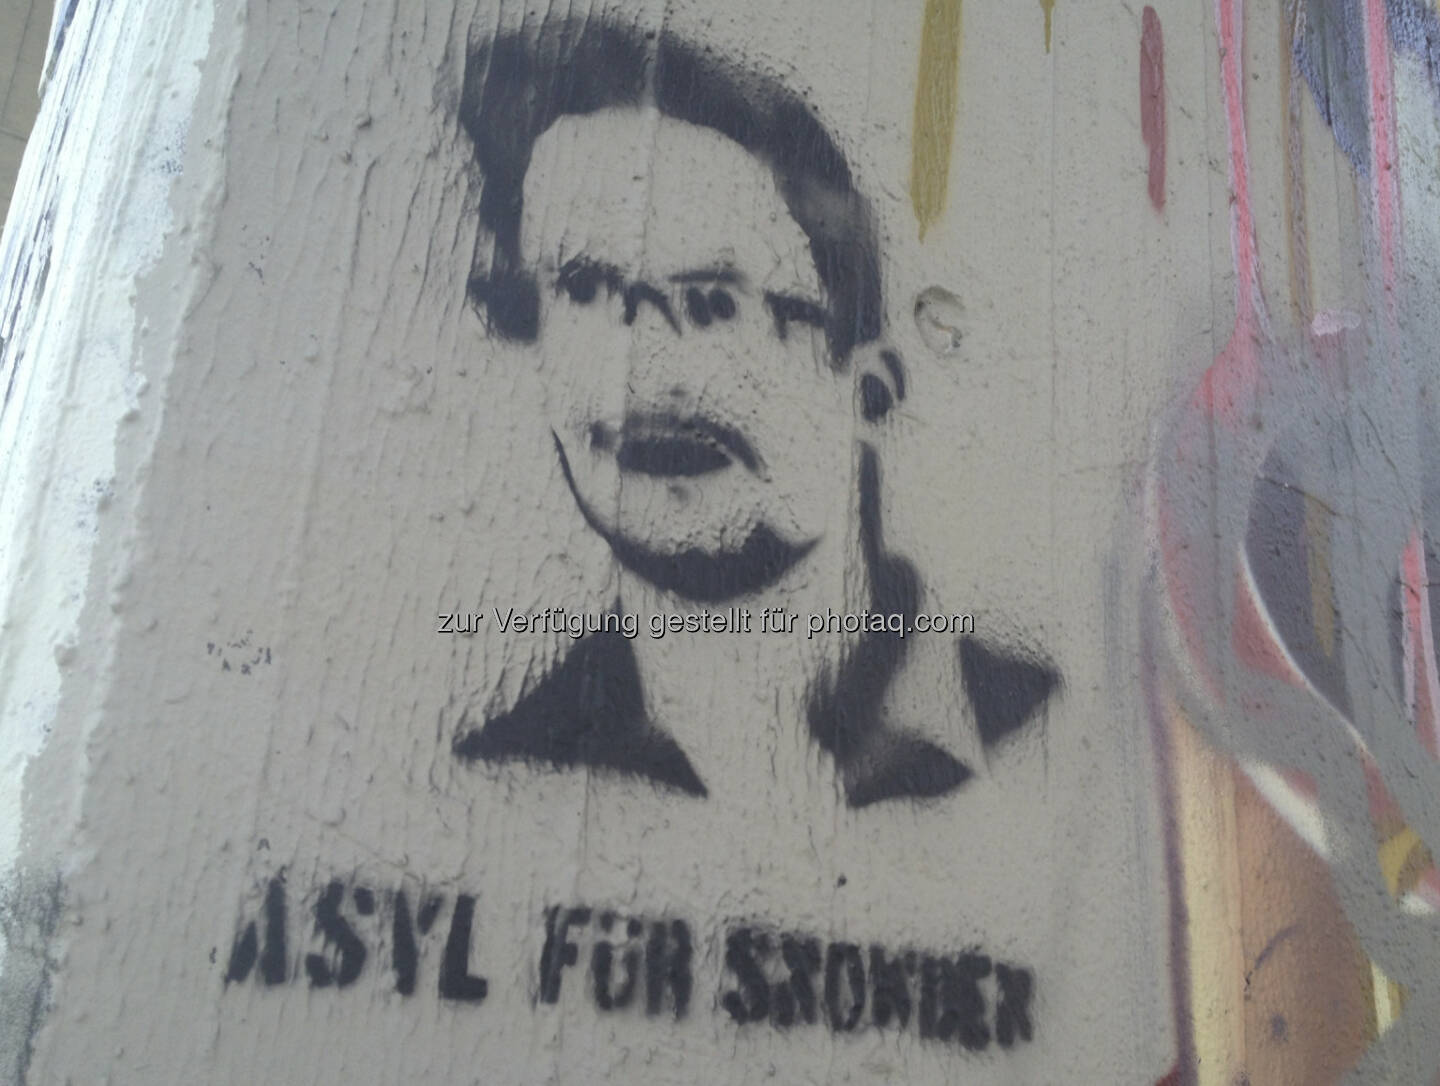 Asyl für Edward Snowden